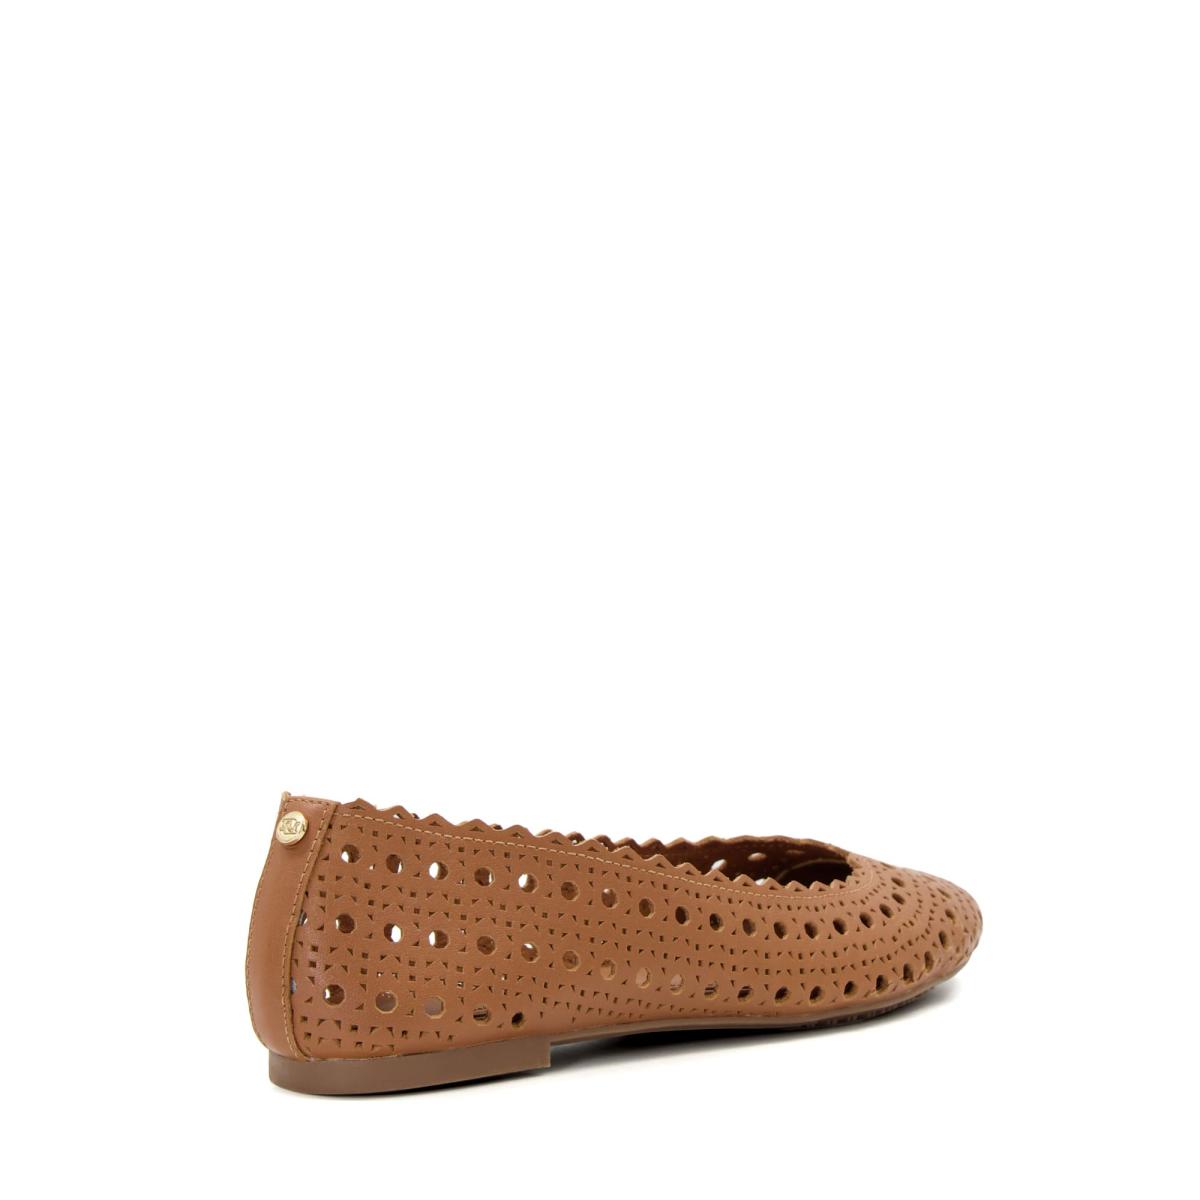 Dune London Harlows - Tan Flat Shoes Women - 5